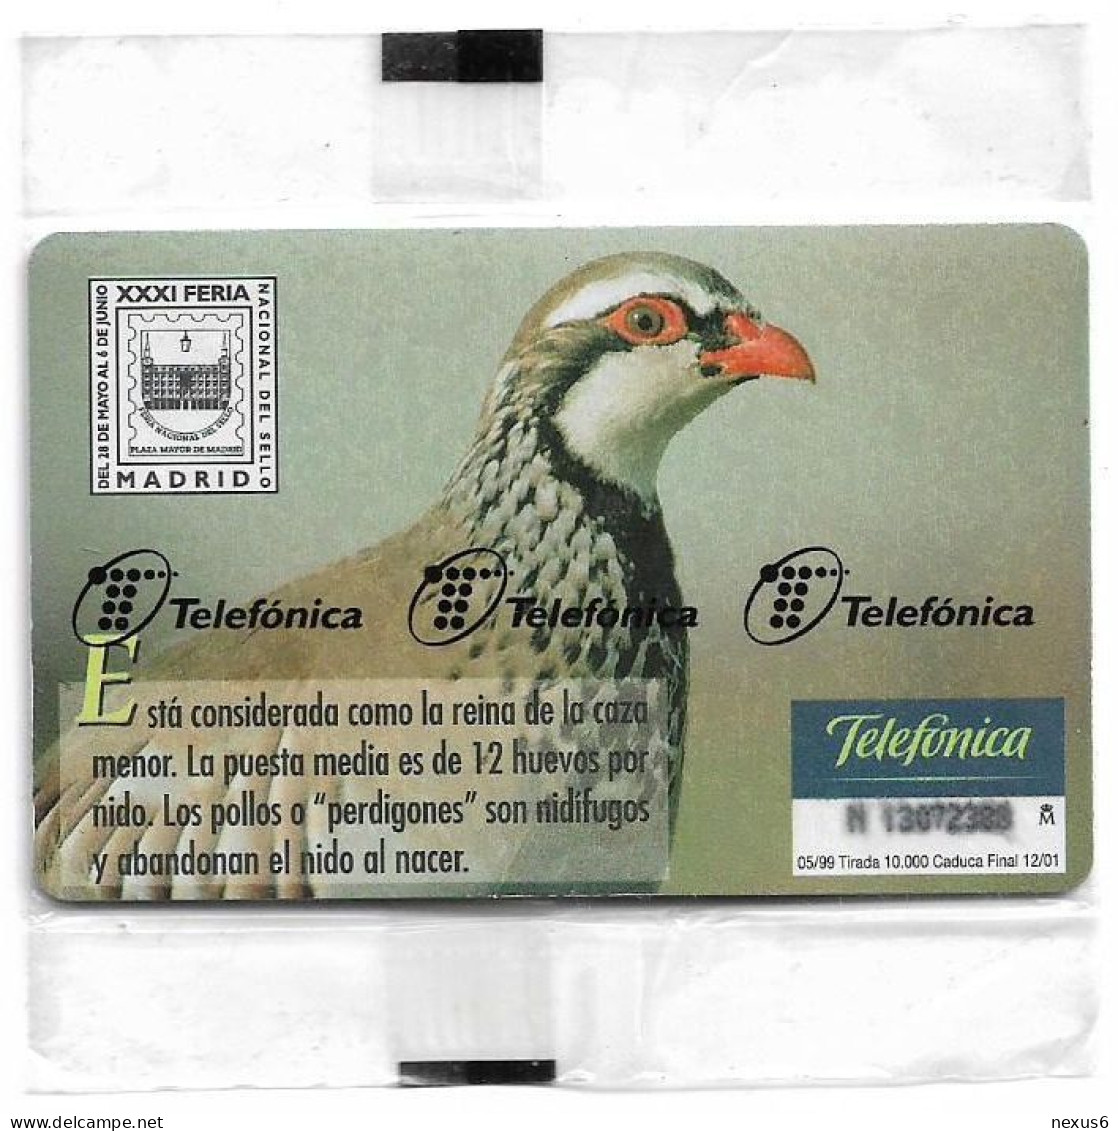 Spain - Telefonica - Fauna Iberica - Perdiz Roja Bird - P-381 - 05.1999, 500PTA, 10.000ex, NSB - Emisiones Privadas